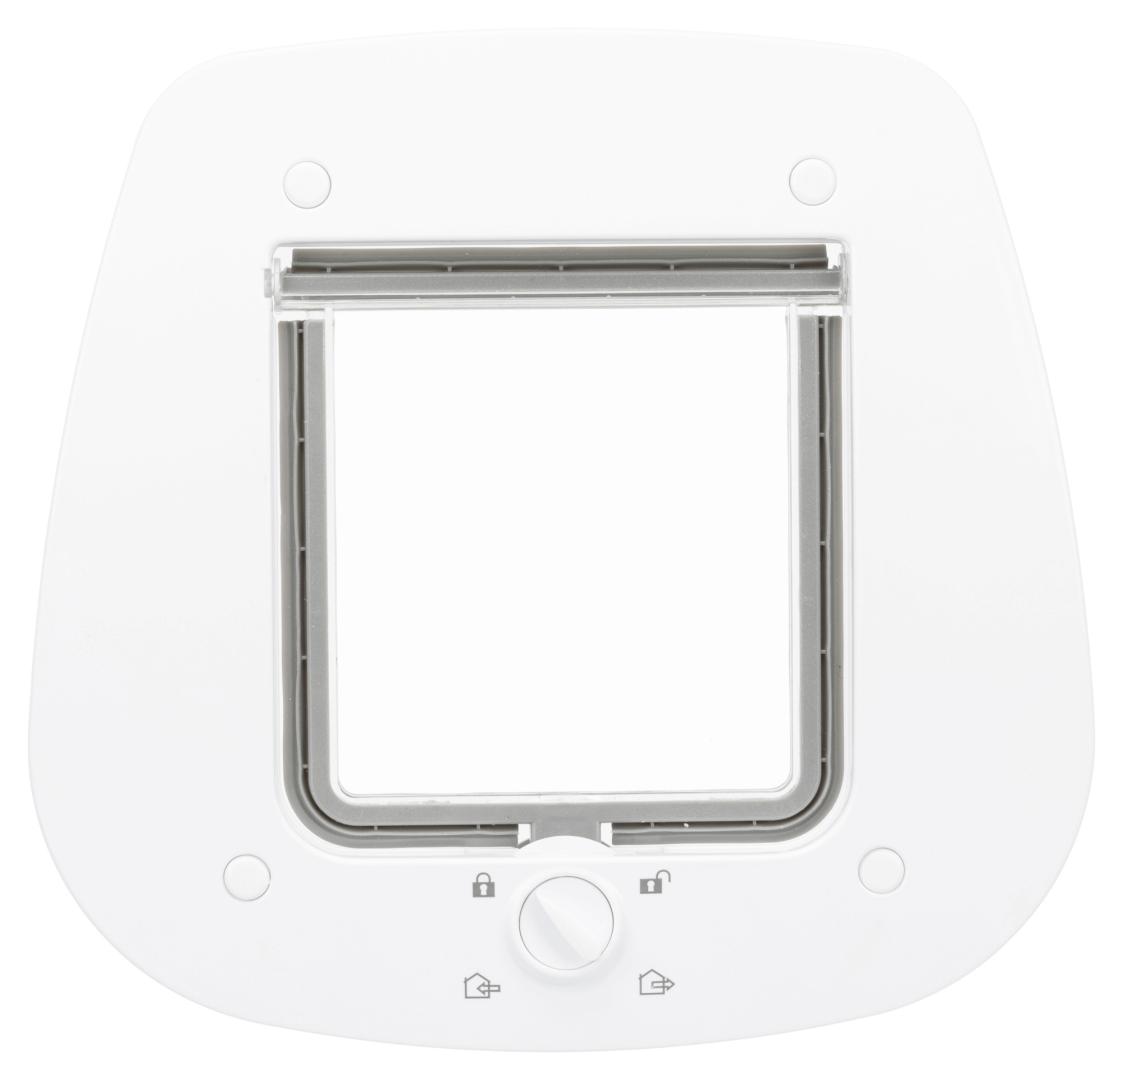 TRIXIE 4-Wege Freilauftür für Glastüren, 27 x 26 cm, weiß